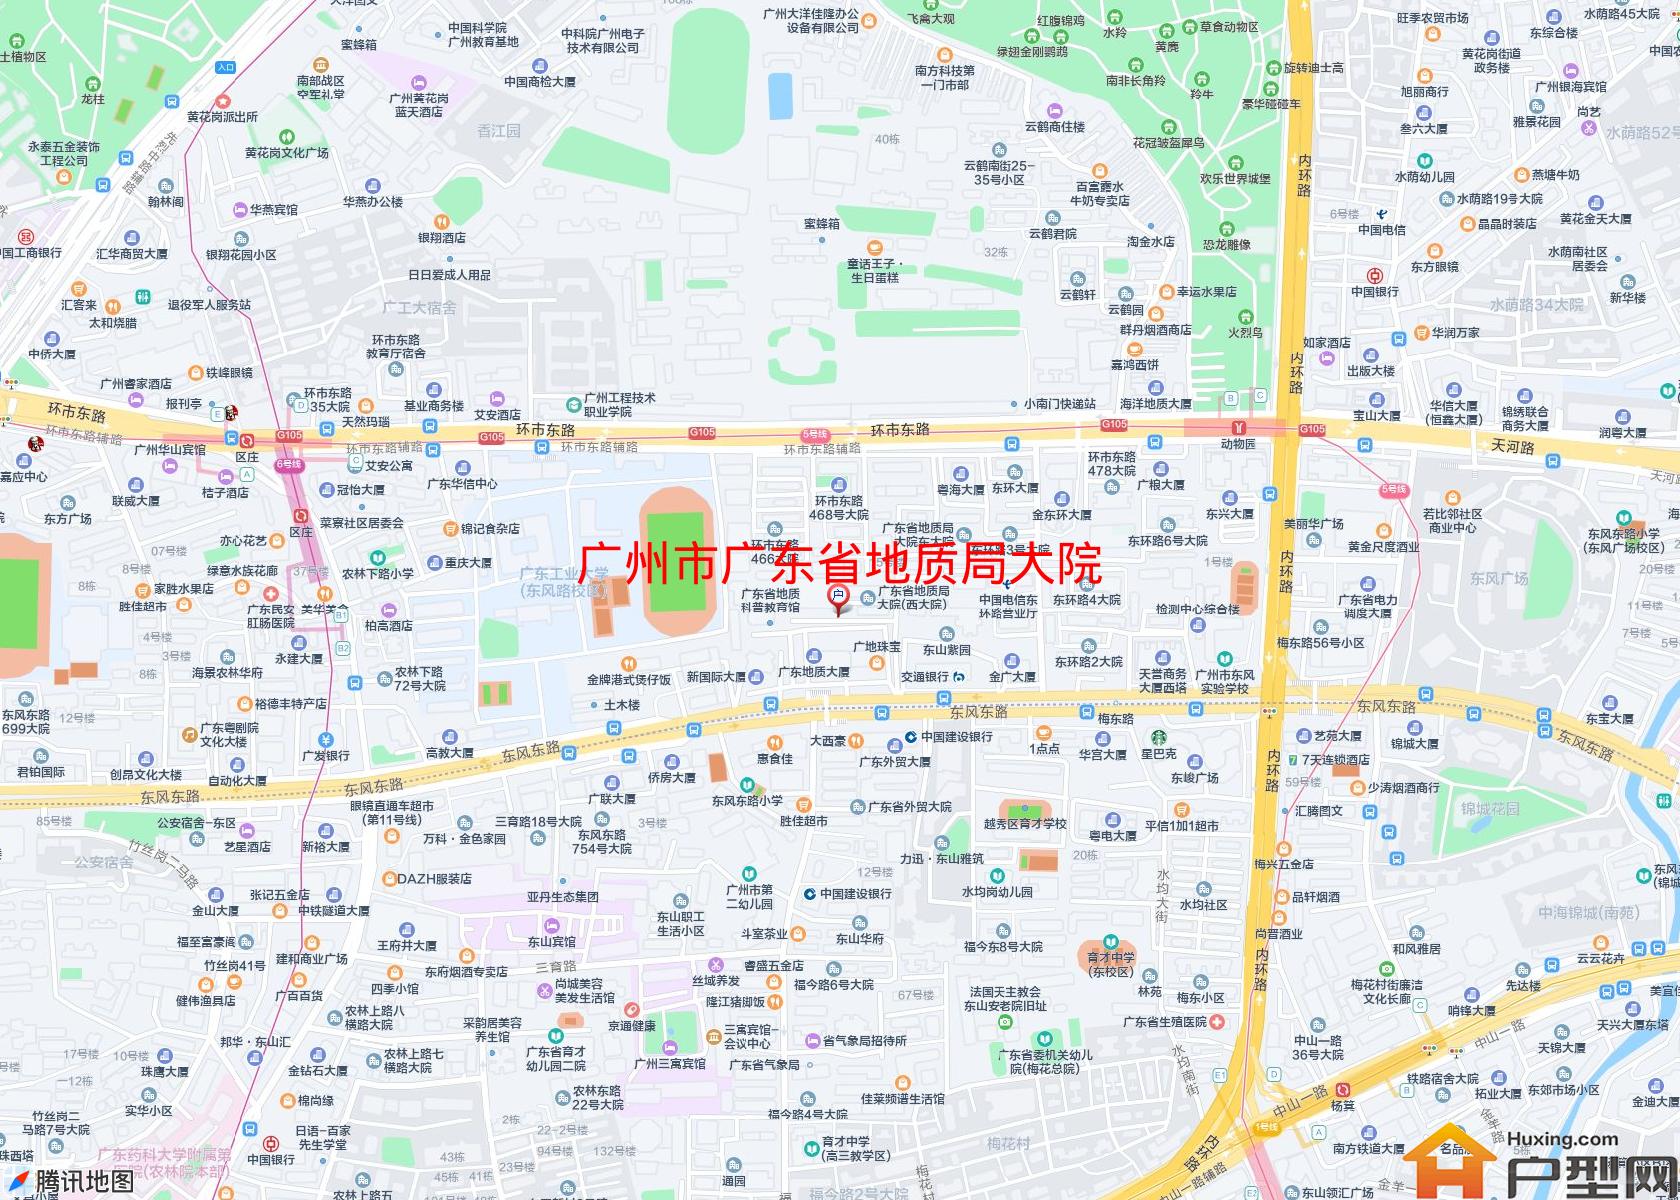 广东省地质局大院小区 - 户型网